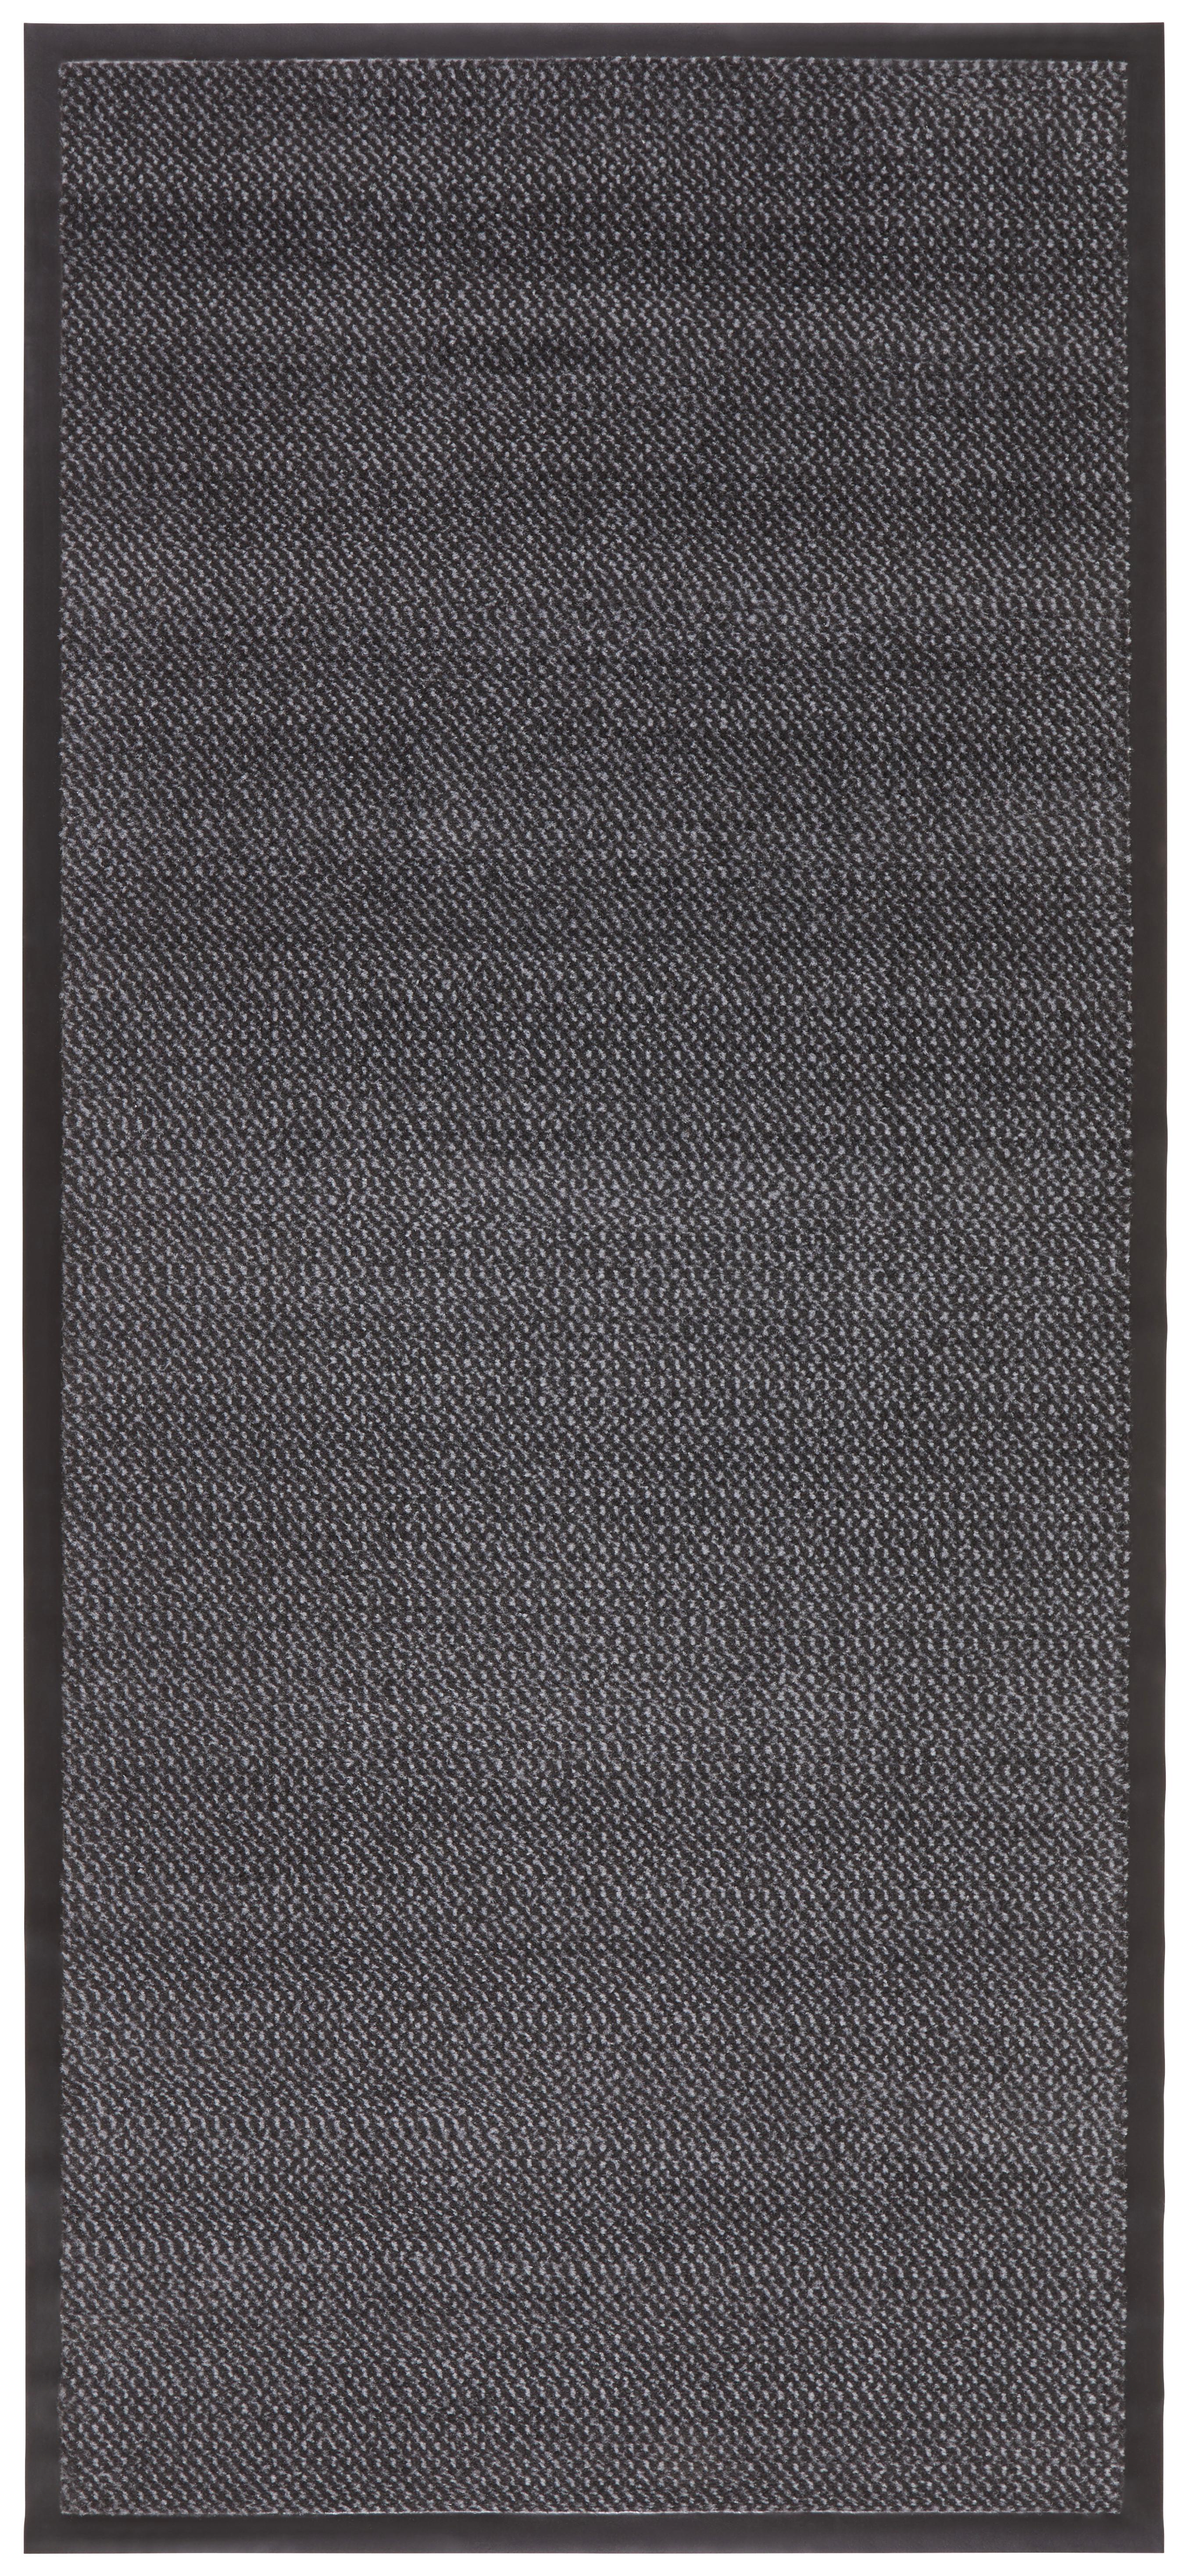 Futó Hamptons4 90/200 - Szürke/Fekete, konvencionális, Textil (90/200cm) - Modern Living